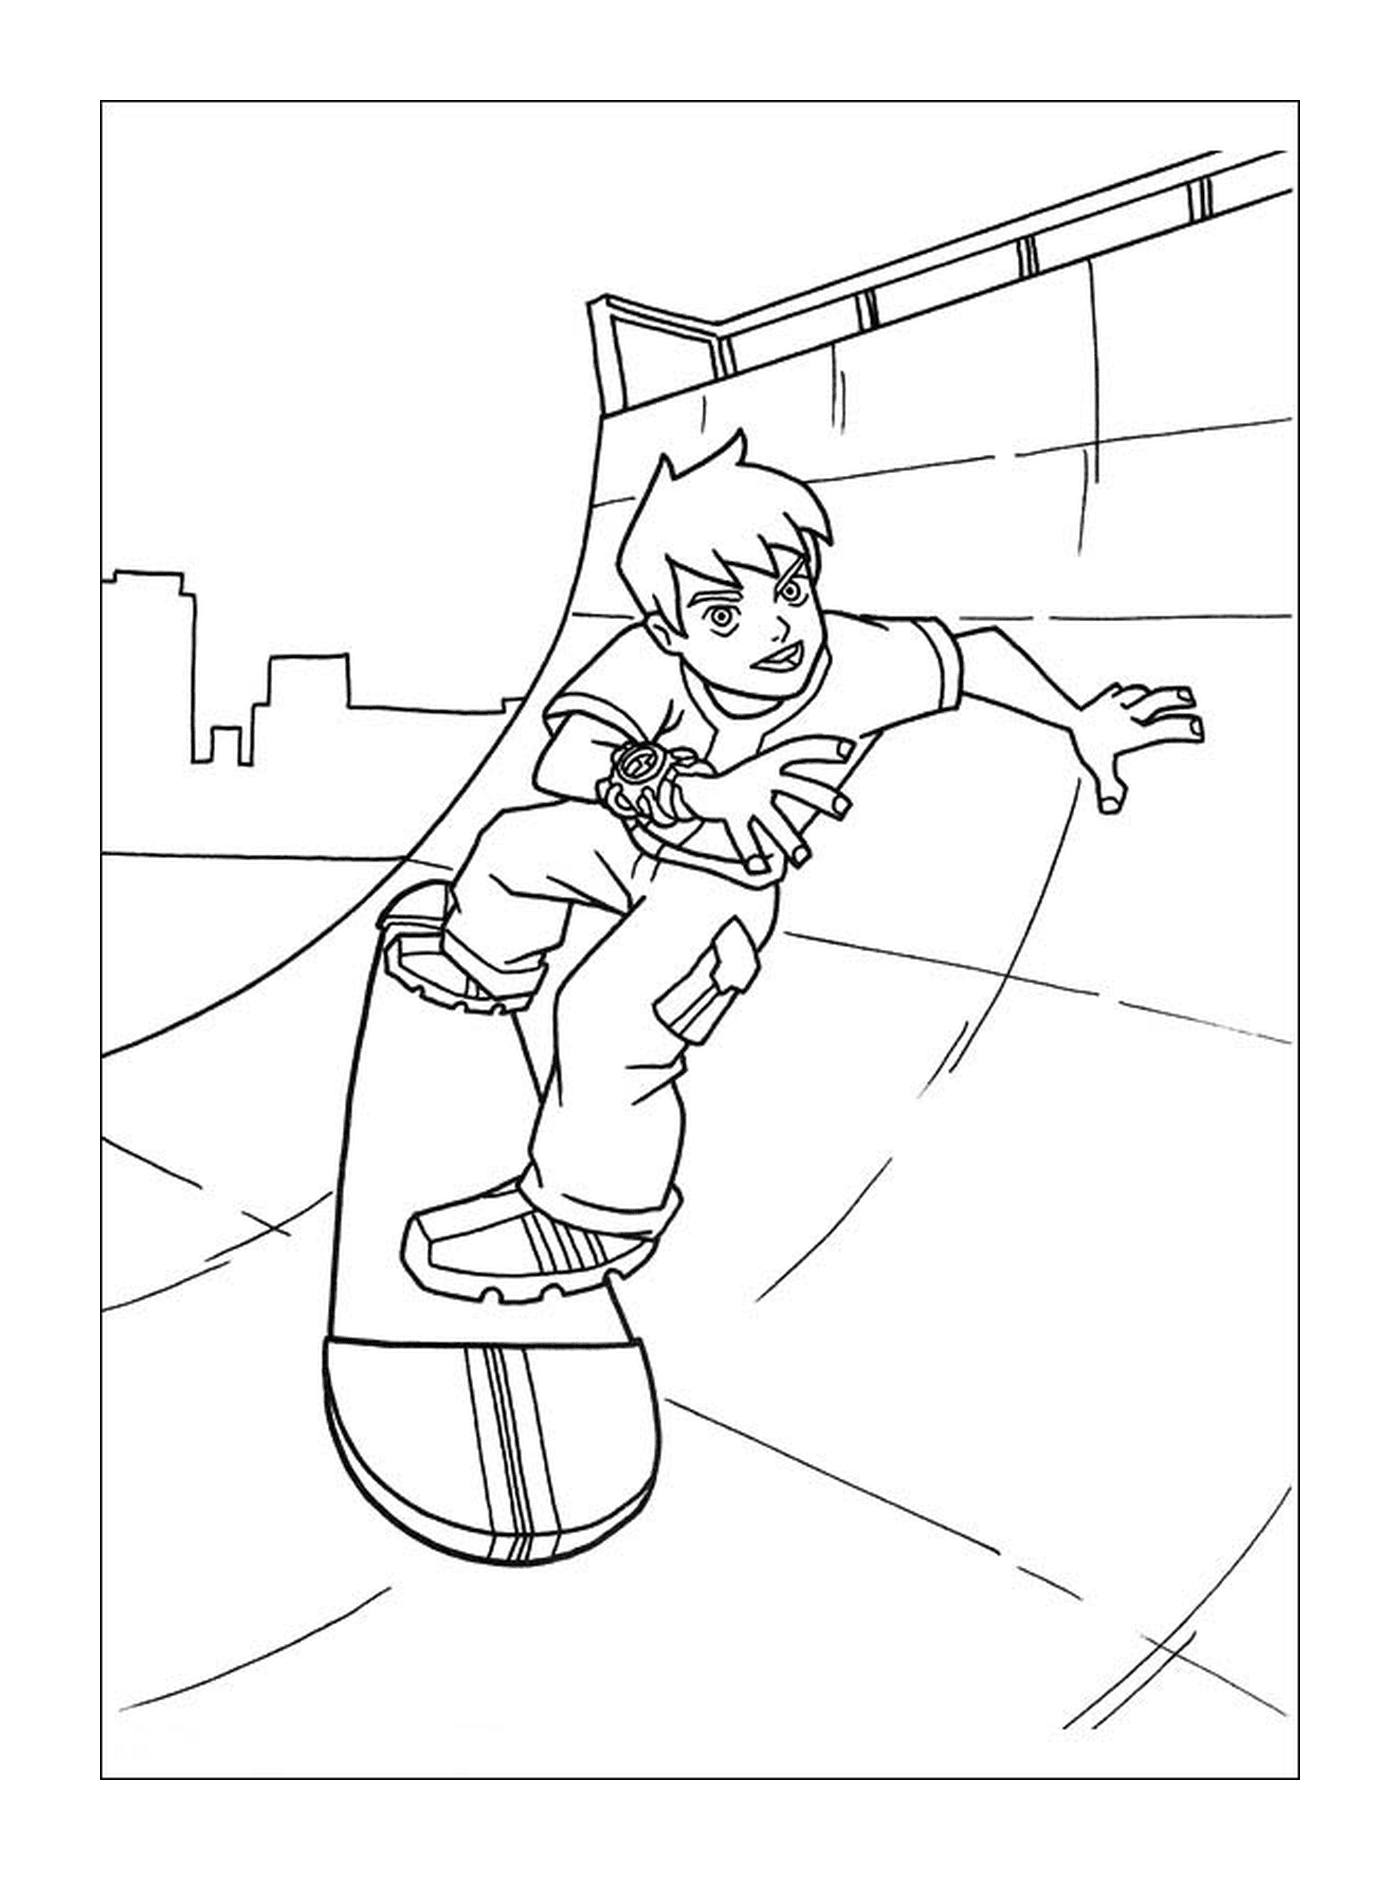  一个男孩在滑板上 